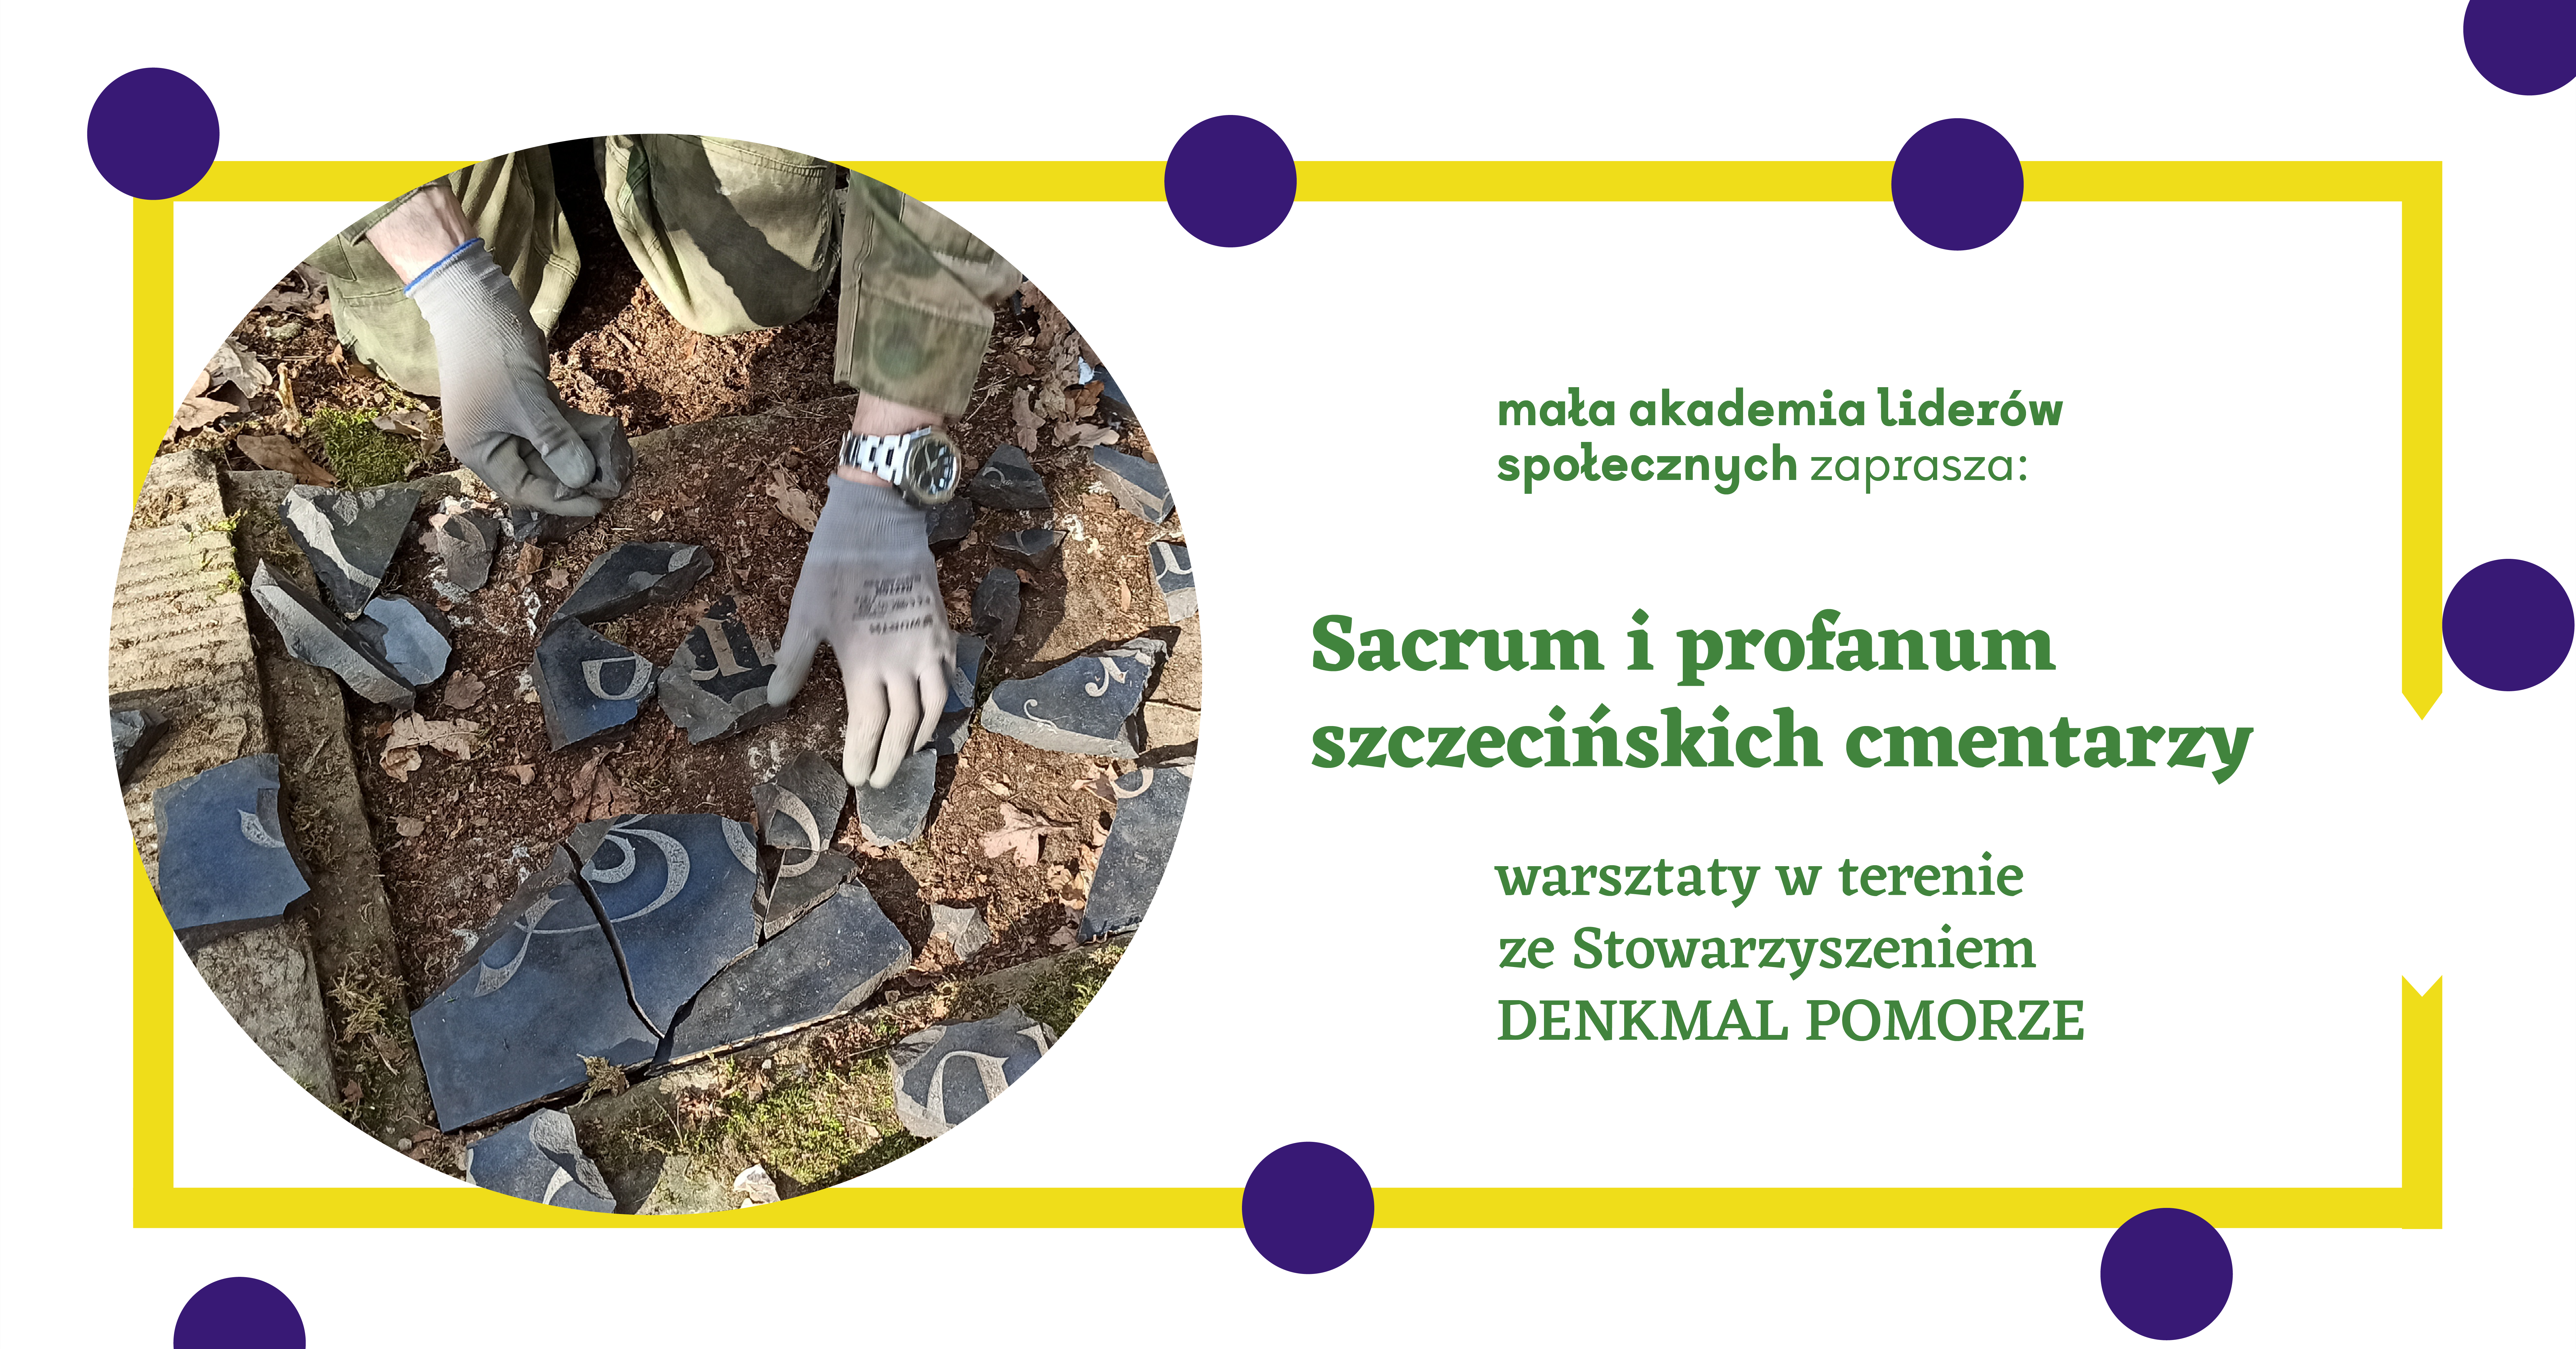 Sacrum i profanum szczecińskich cmentarzy | warsztaty w terenie z DENKMAL POMORZE [zapisy]